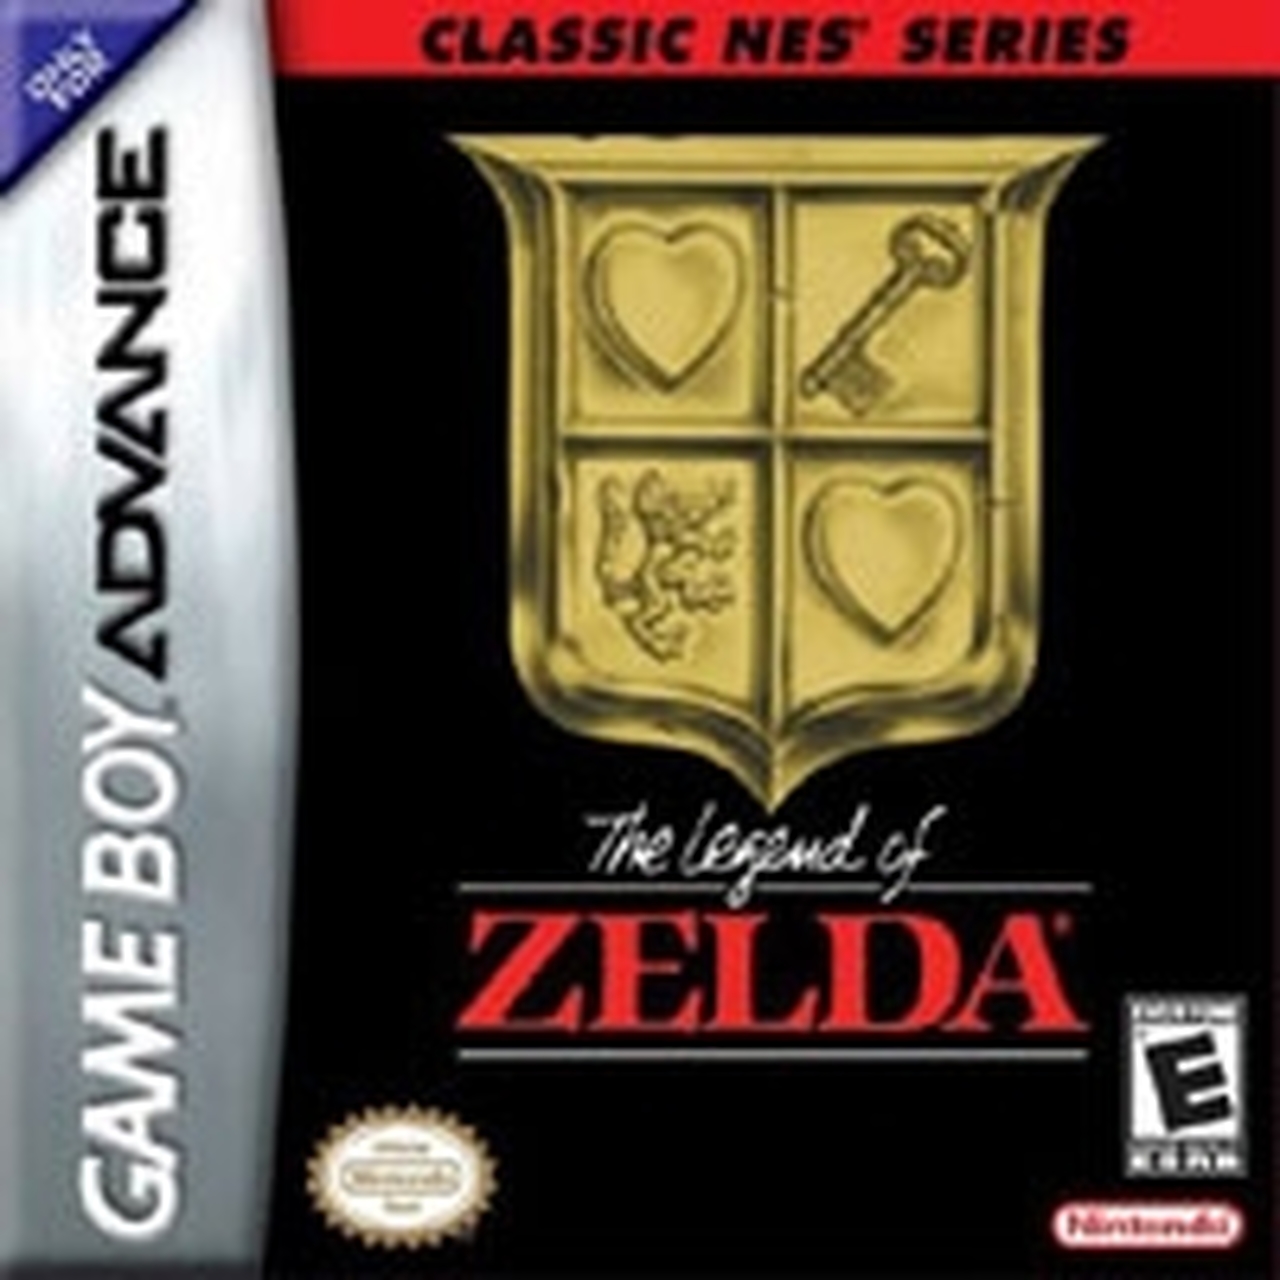 The Legend of Zelda (csak kazetta) - Game Boy Advance Játékok